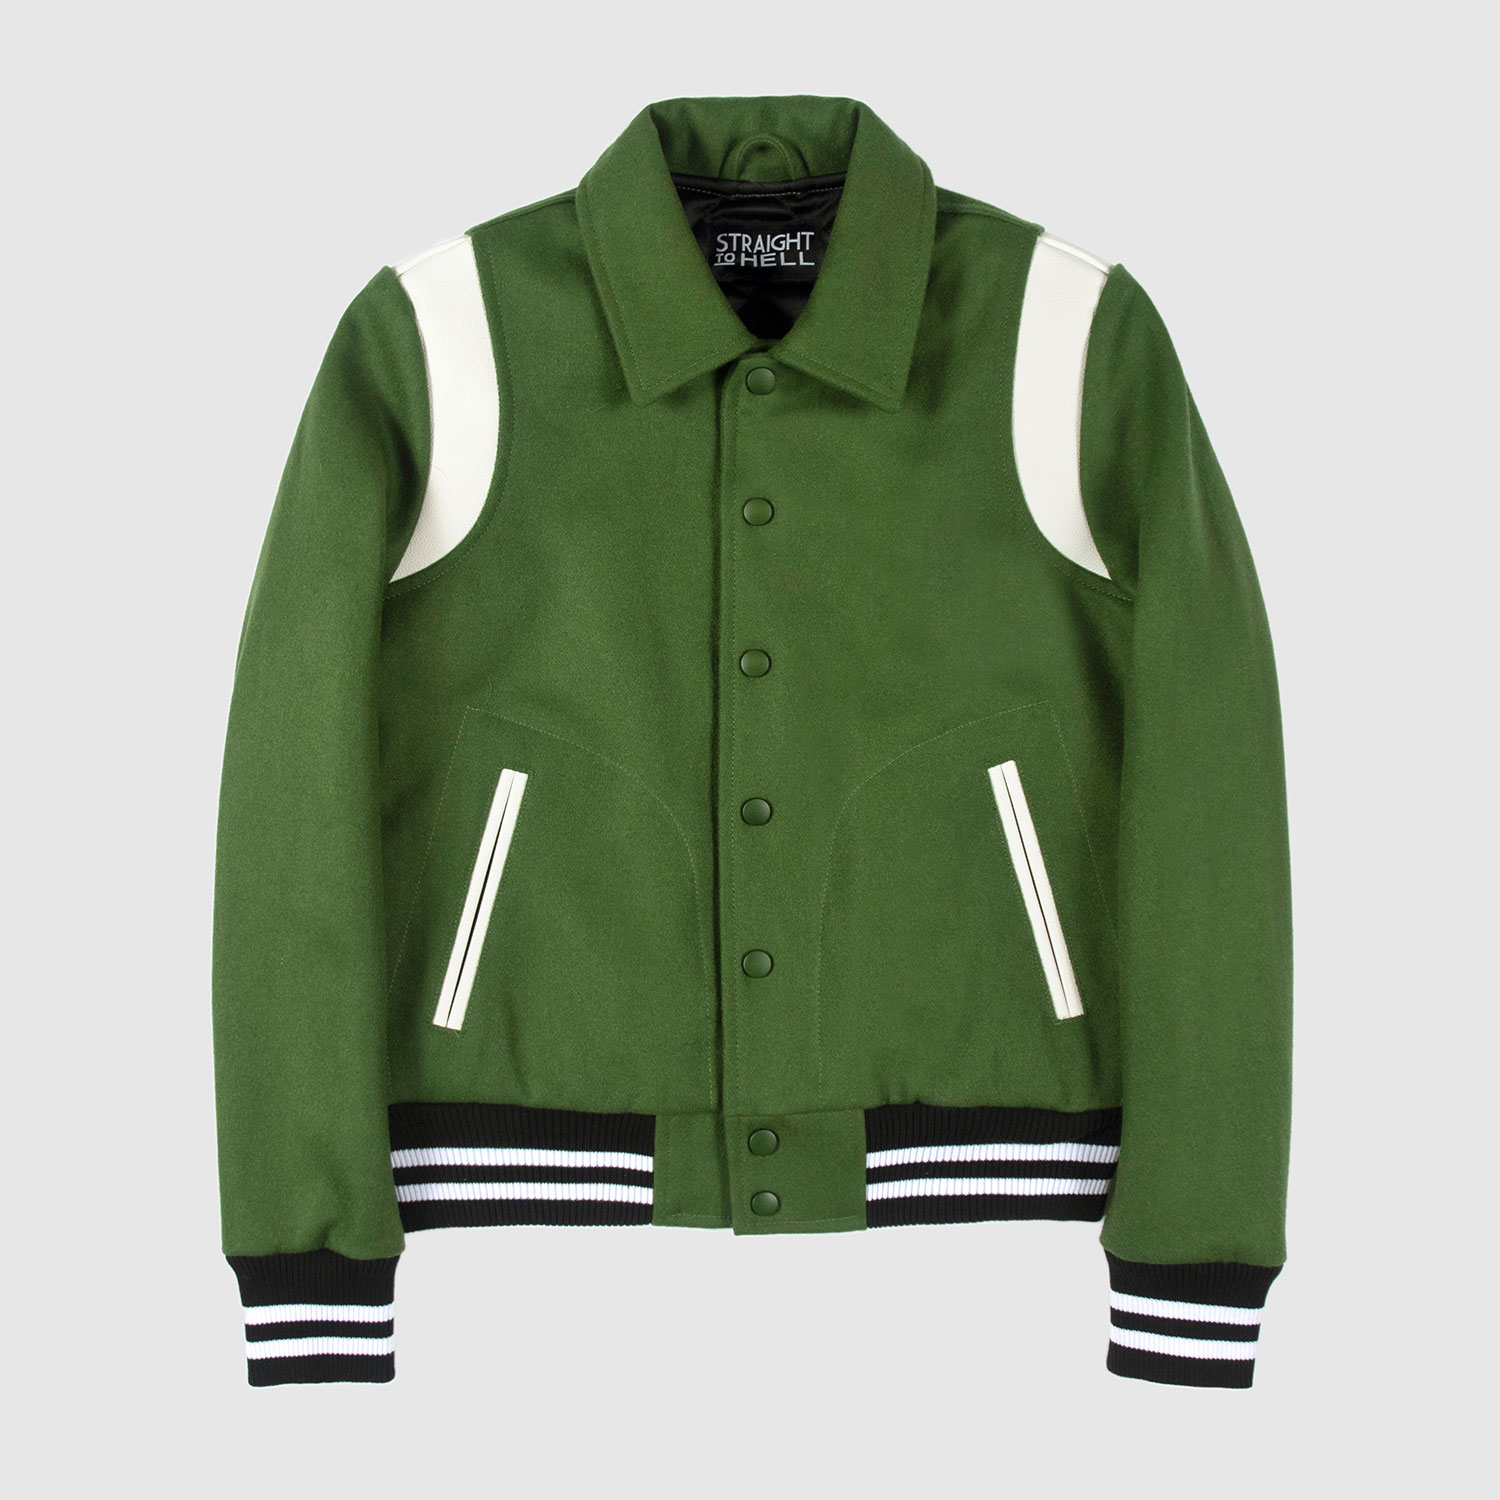 green varsity jackets